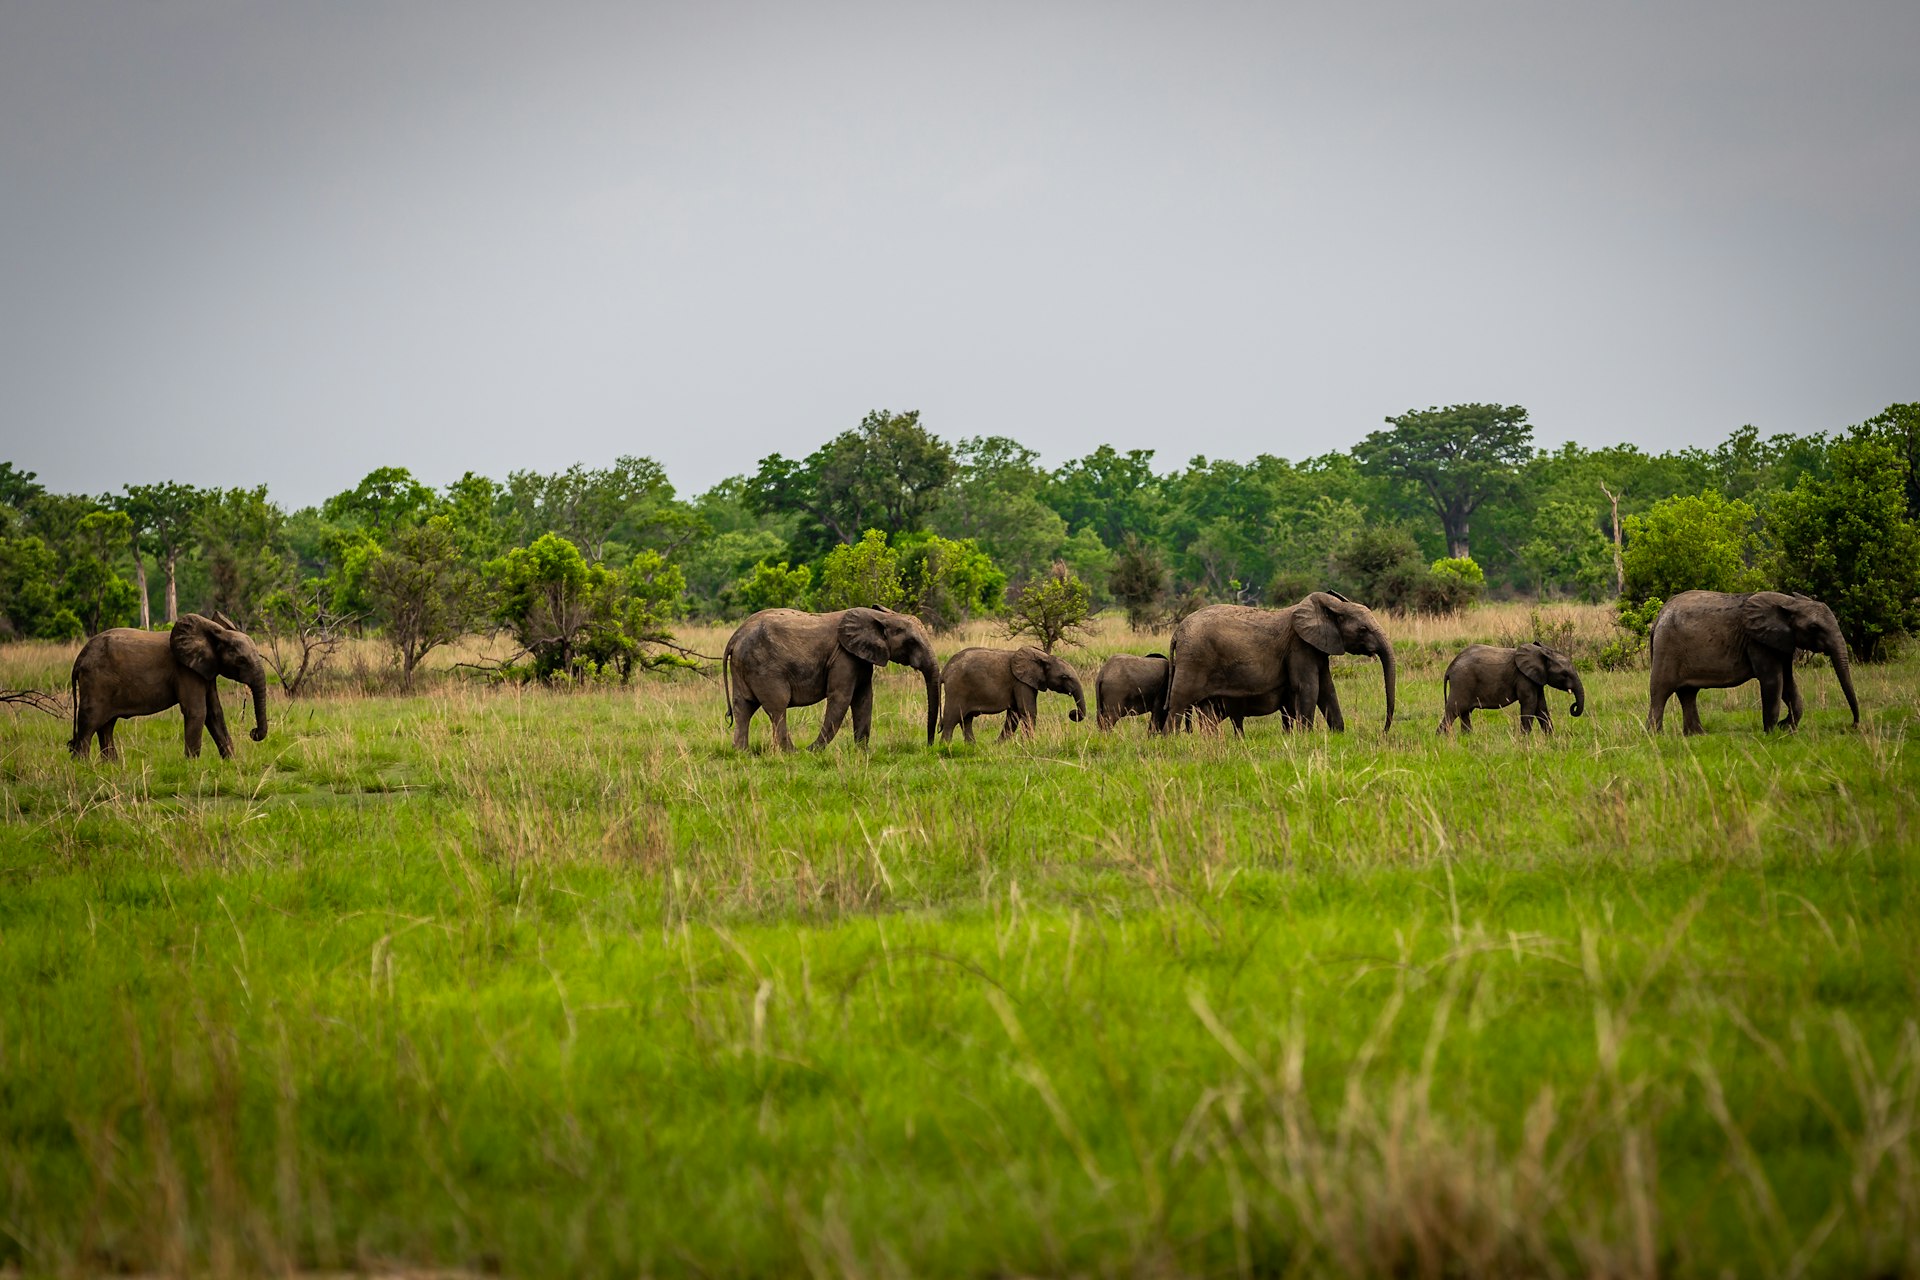 A herd of elephants in grassland